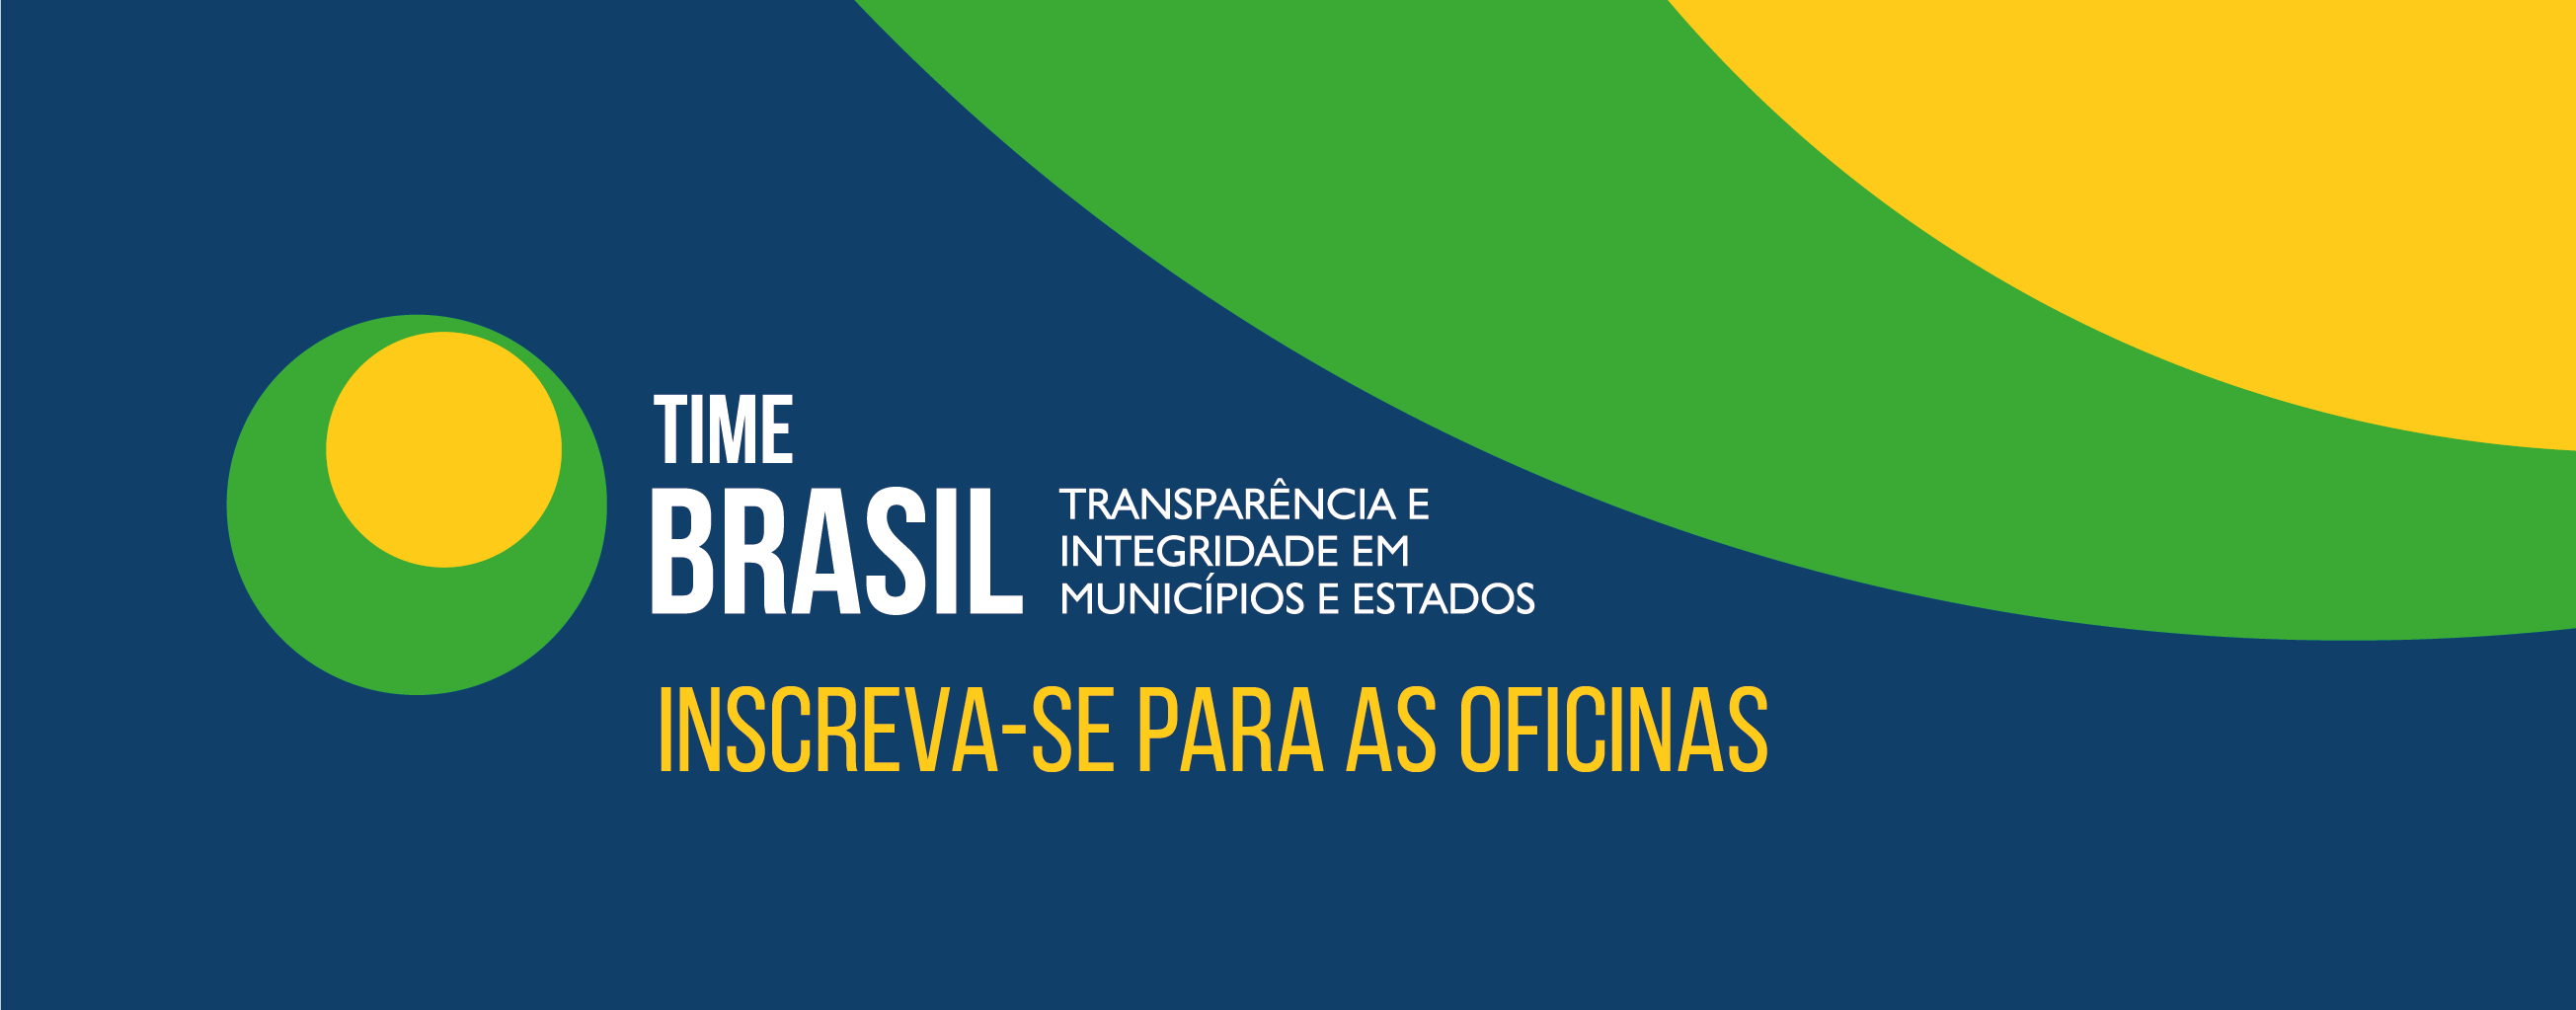 Time Brasil banner